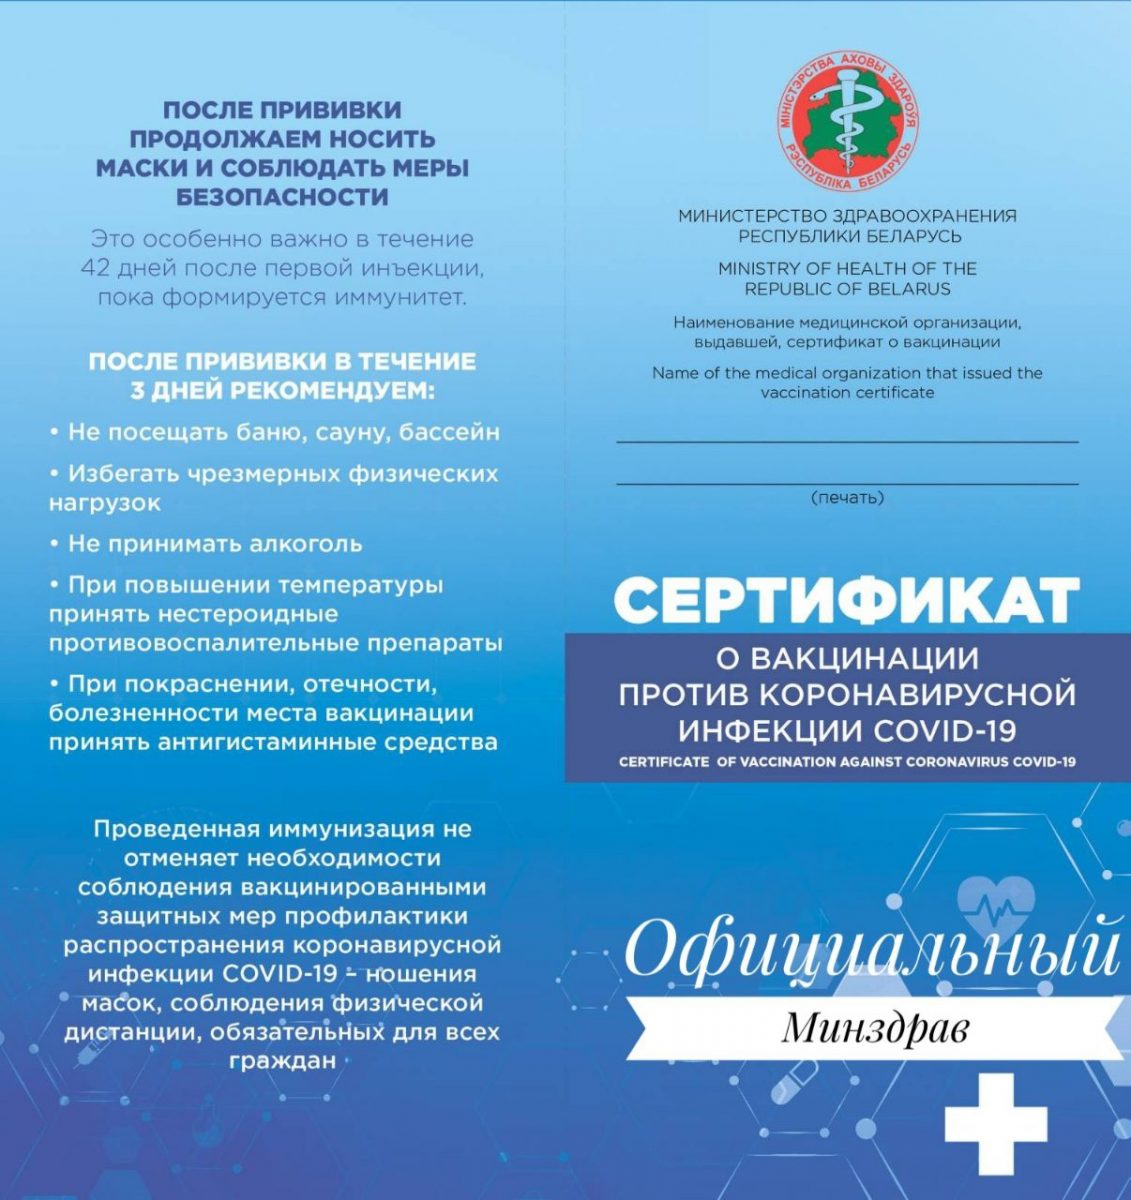 Сертификаты о вакцинации против коронавирусной инфекции планируют выдавать с 24 мая в Могилевской области